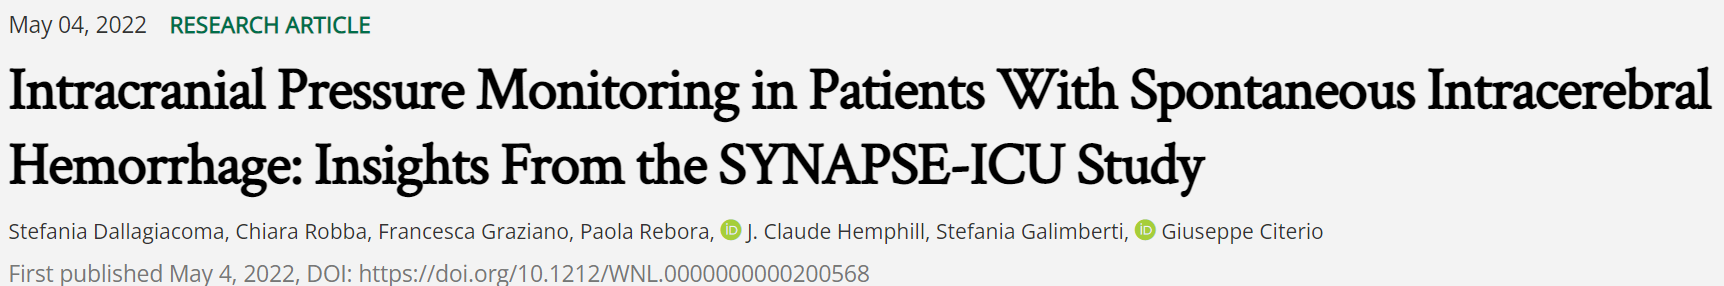 神经病学:自发性脑出血患者的颅内压监测:来自SYNAPSE-ICU研究的启示